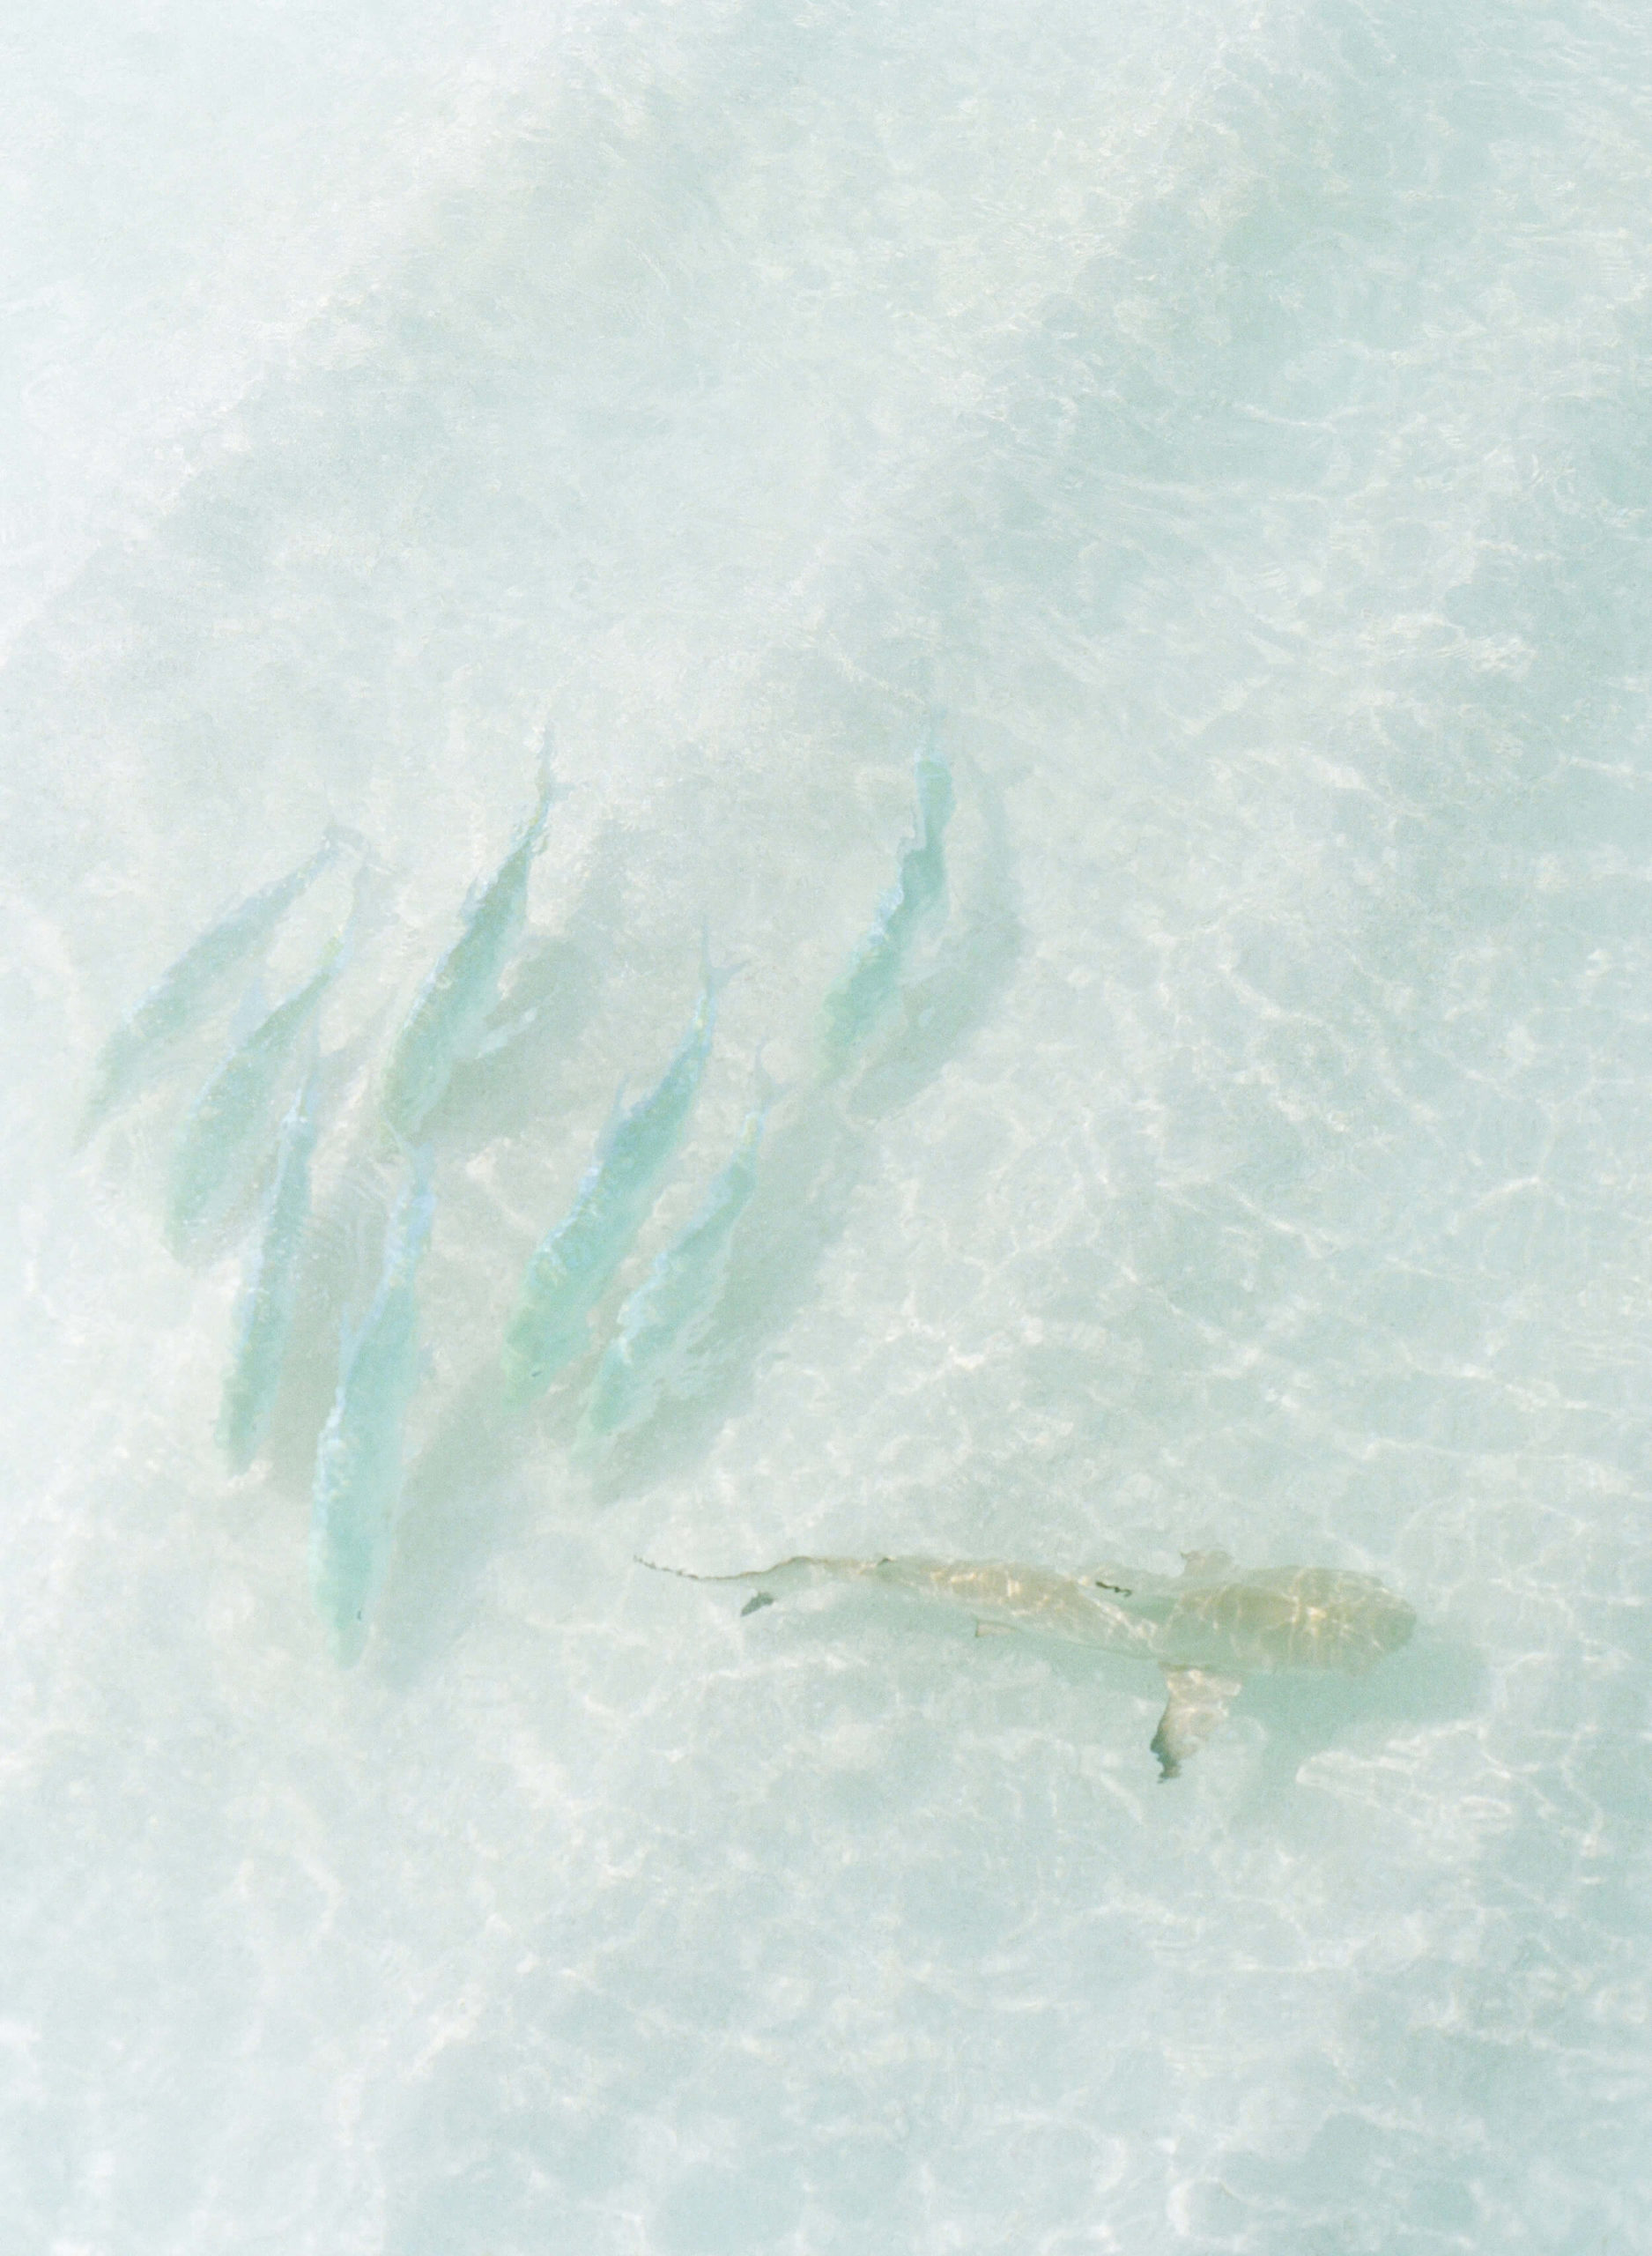 fish in Maldives